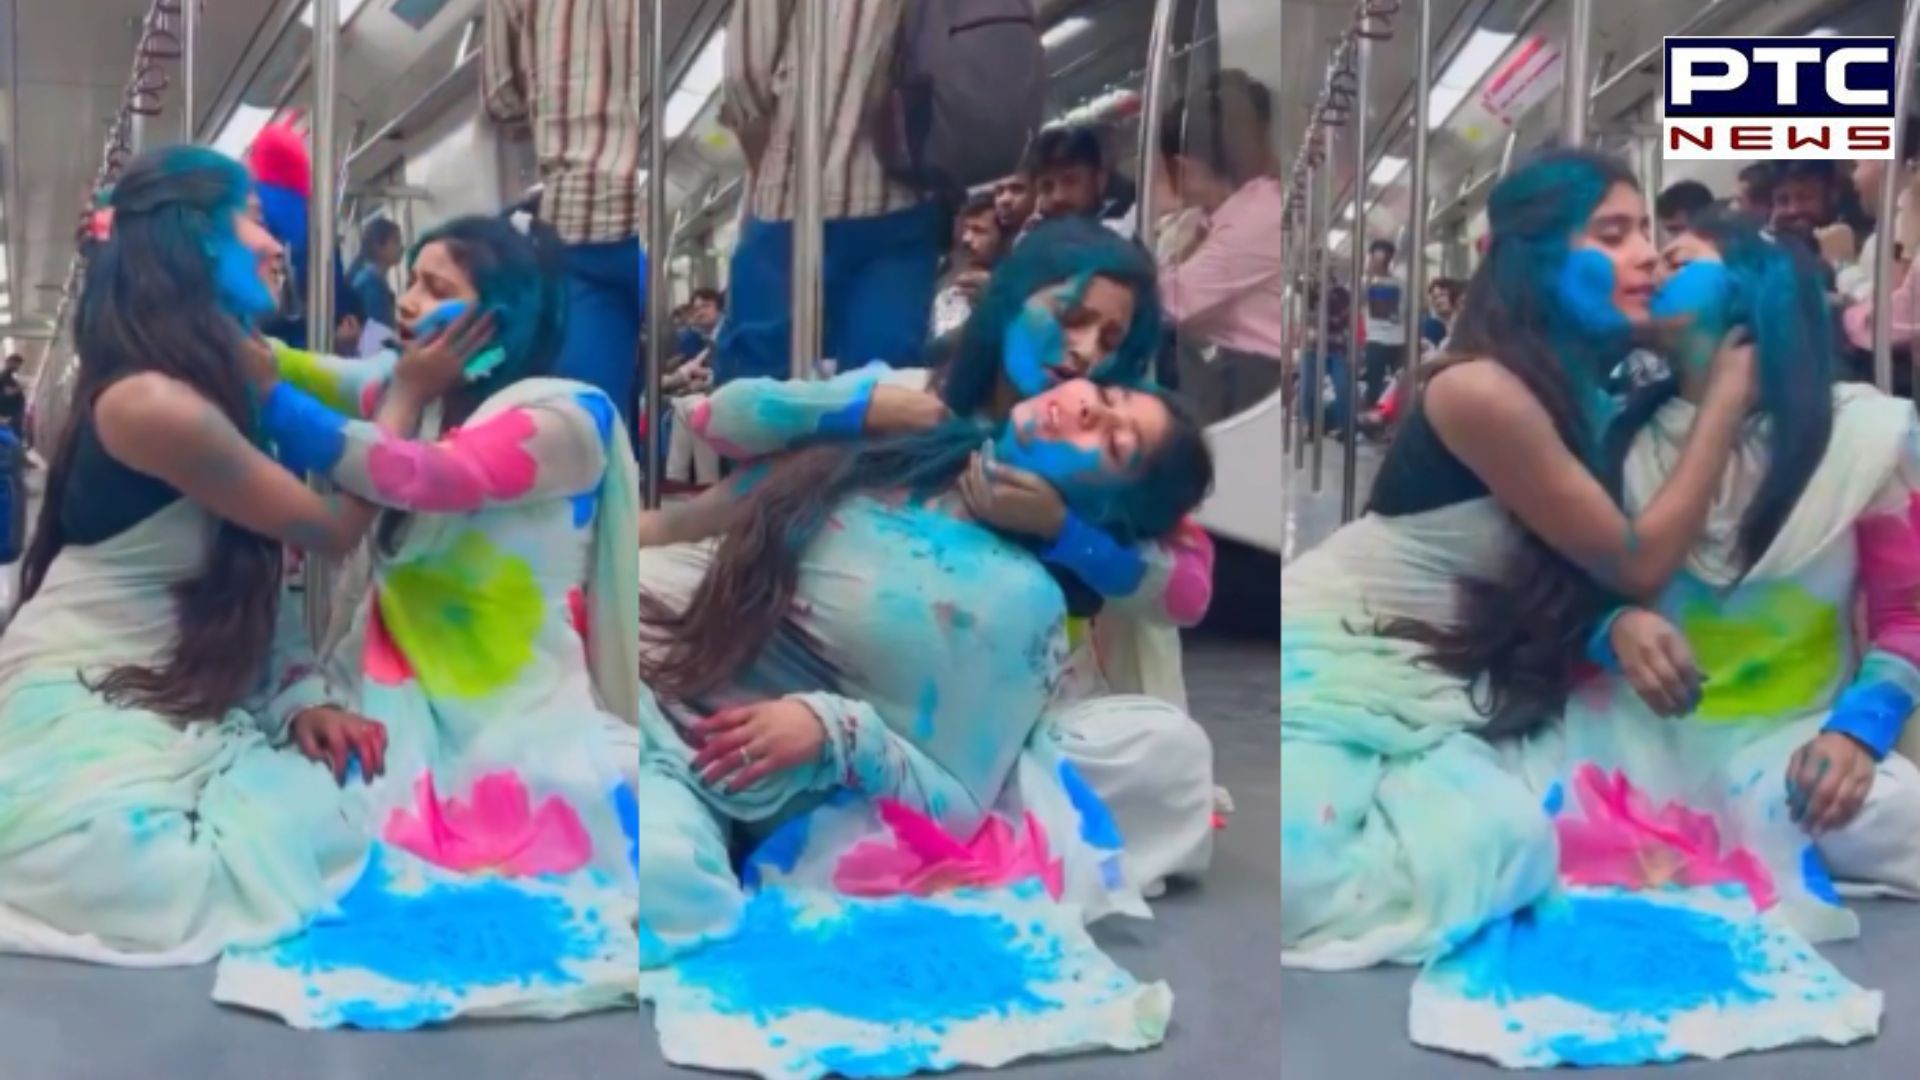 Viral video: Girls play holi in Delhi metro, authorities respond